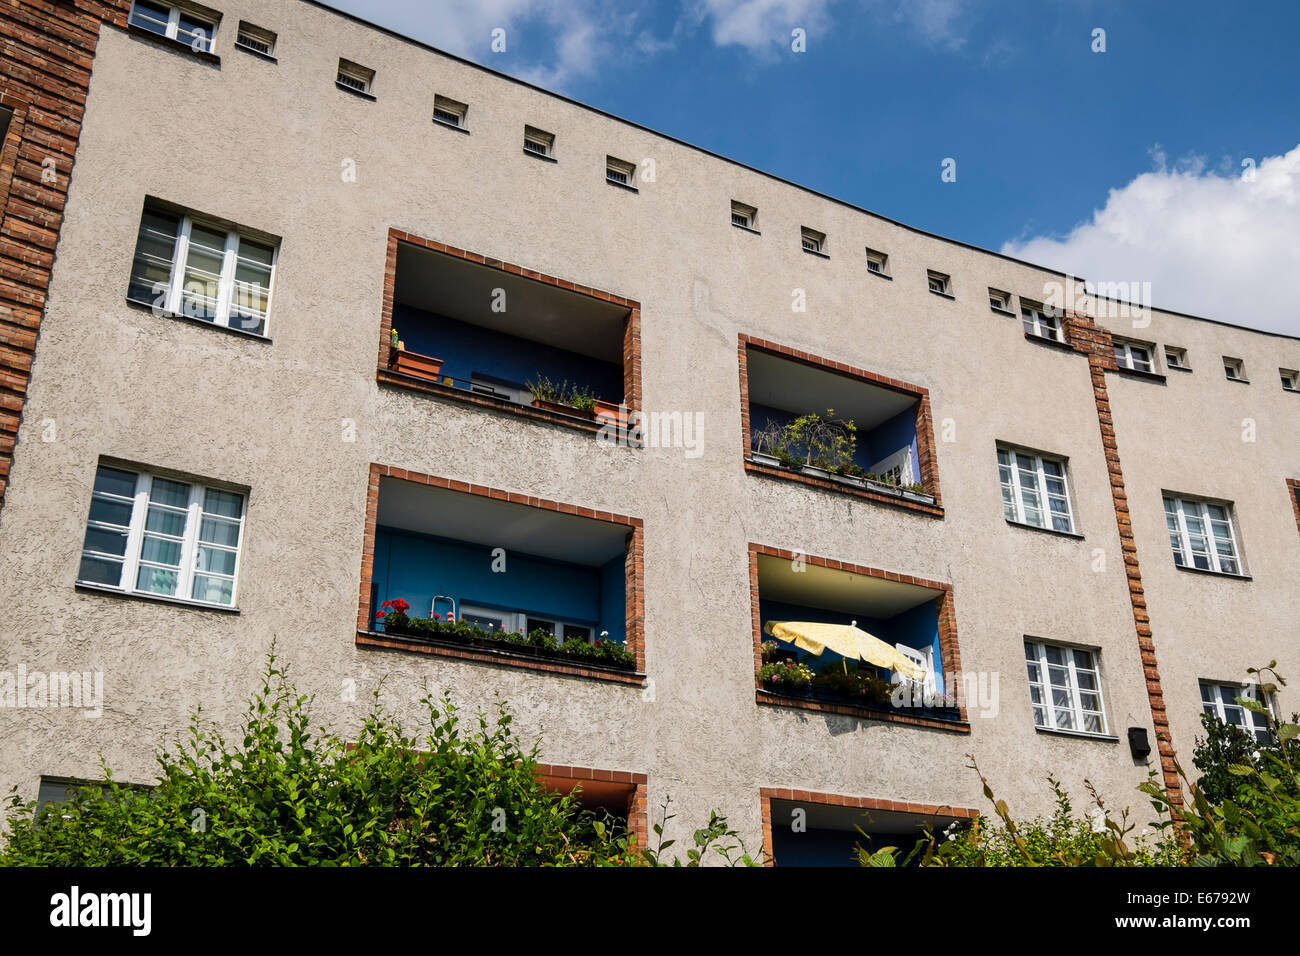 Logement à Grosssiedlung moderniste Britz - Hufeisensiedlung (Horseshoe le logement) site de l'UNESCO Berlin, Allemagne Banque D'Images